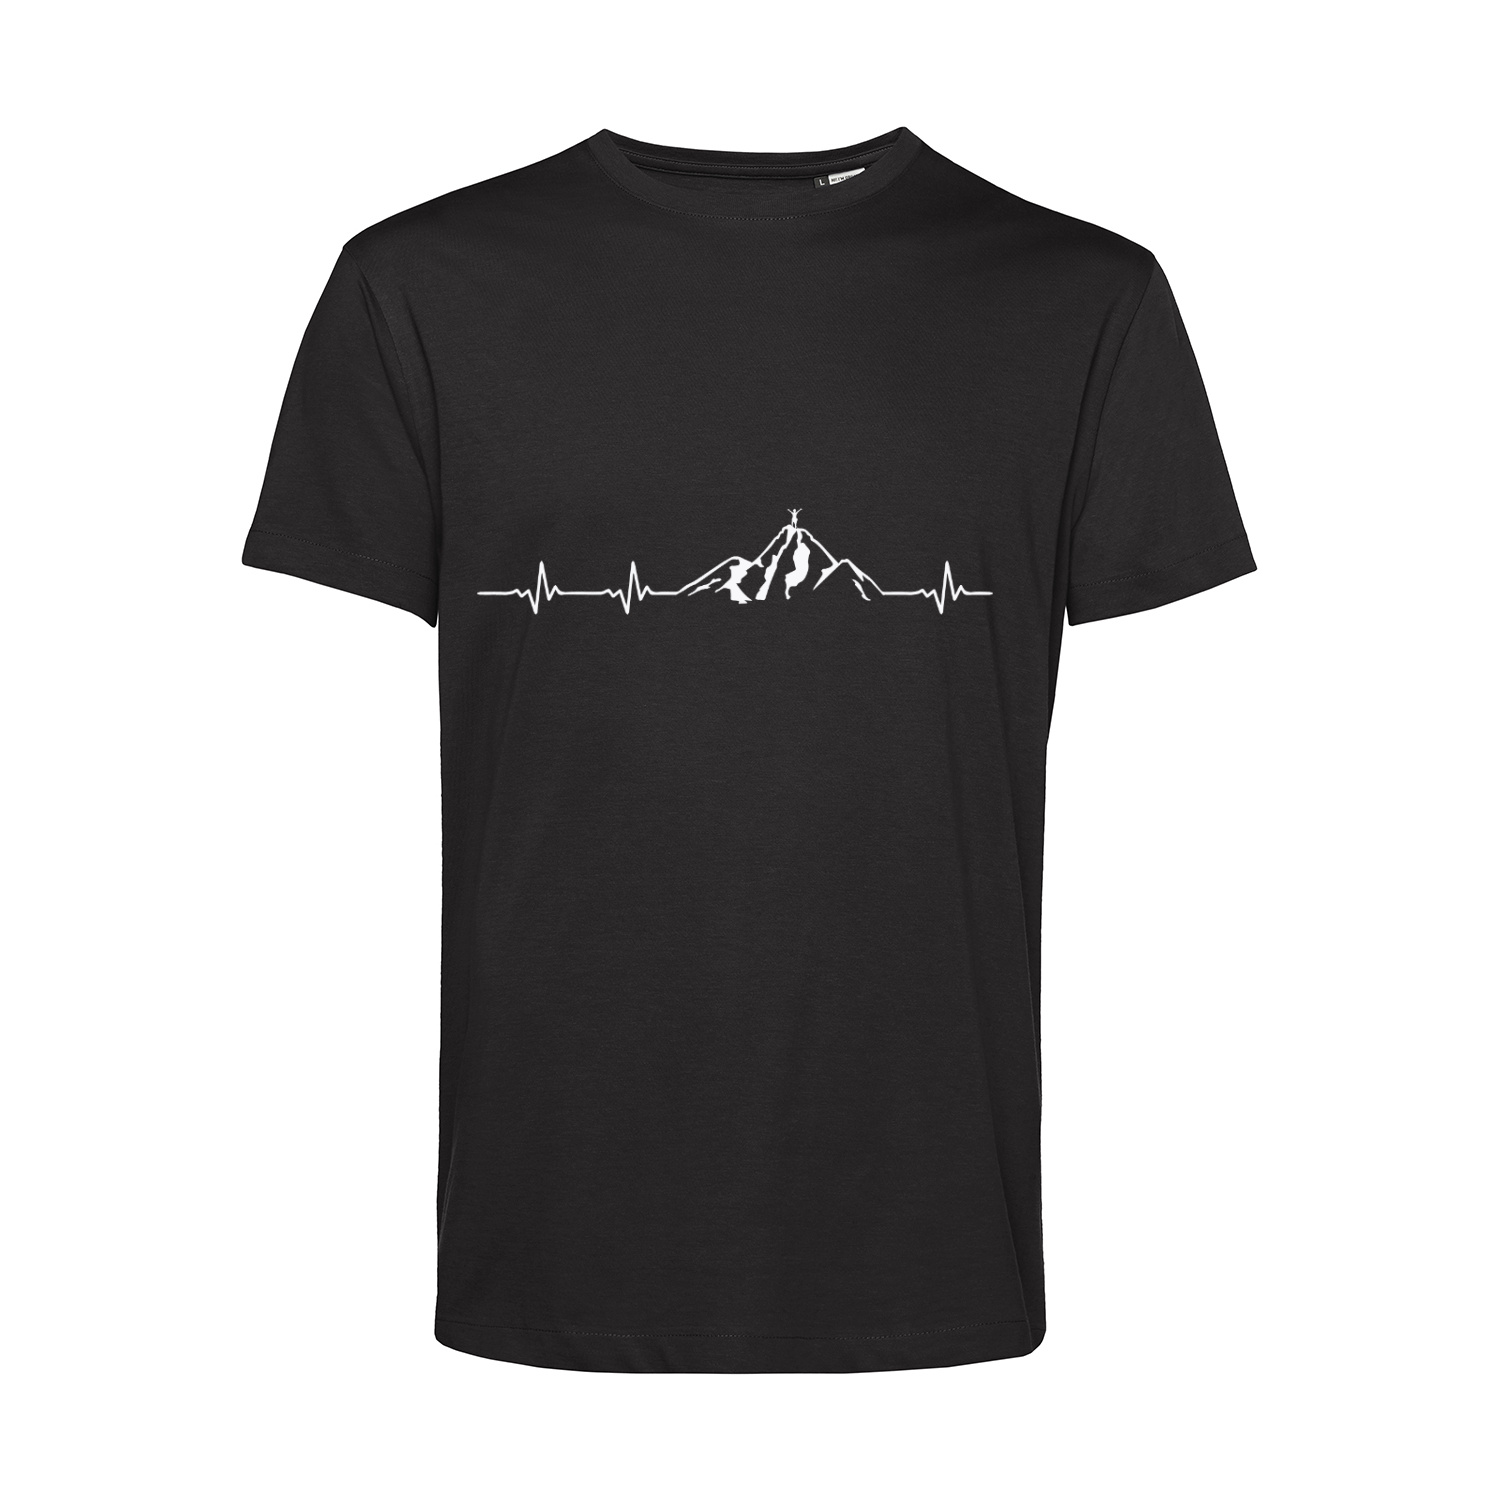 Nachhaltiges T-Shirt Herren Outdoor - Herzstromkurve